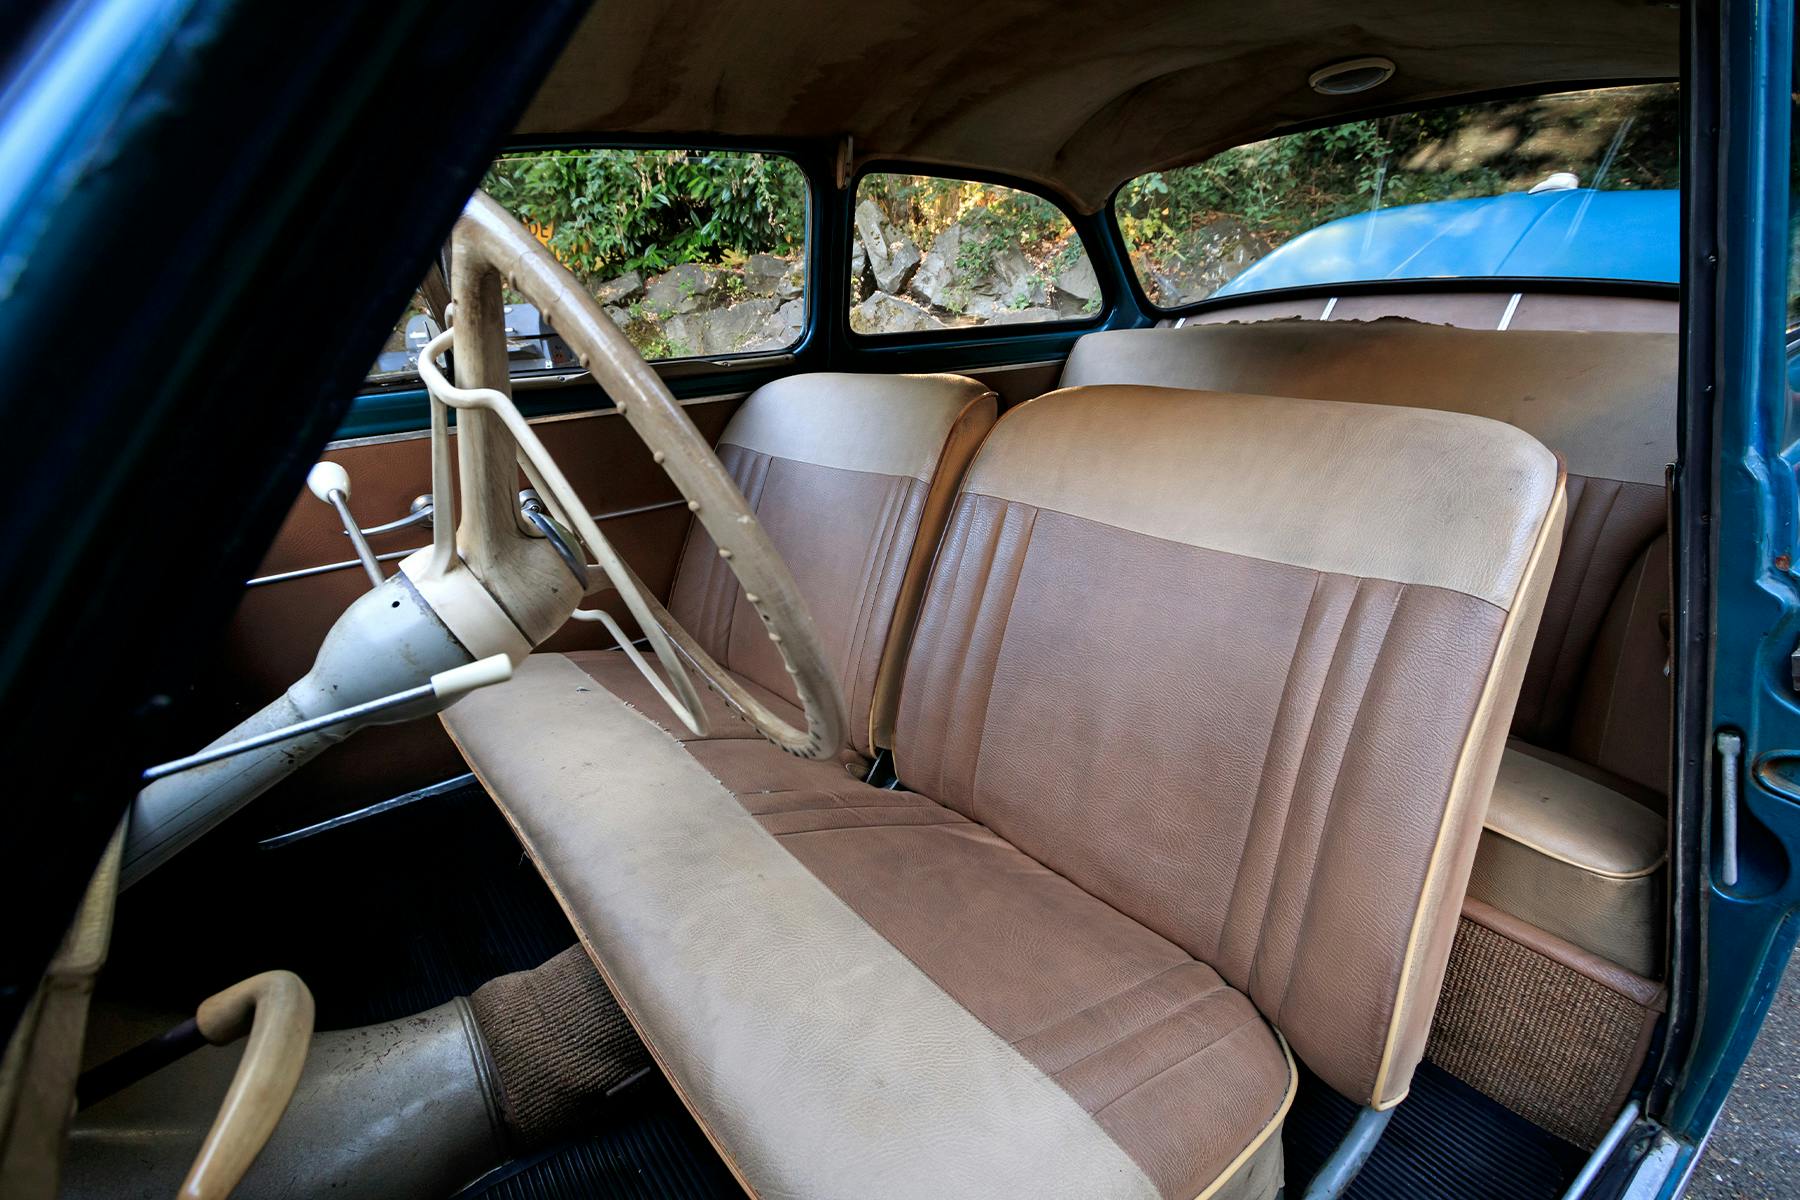 1960 Skoda Octavia interior seats